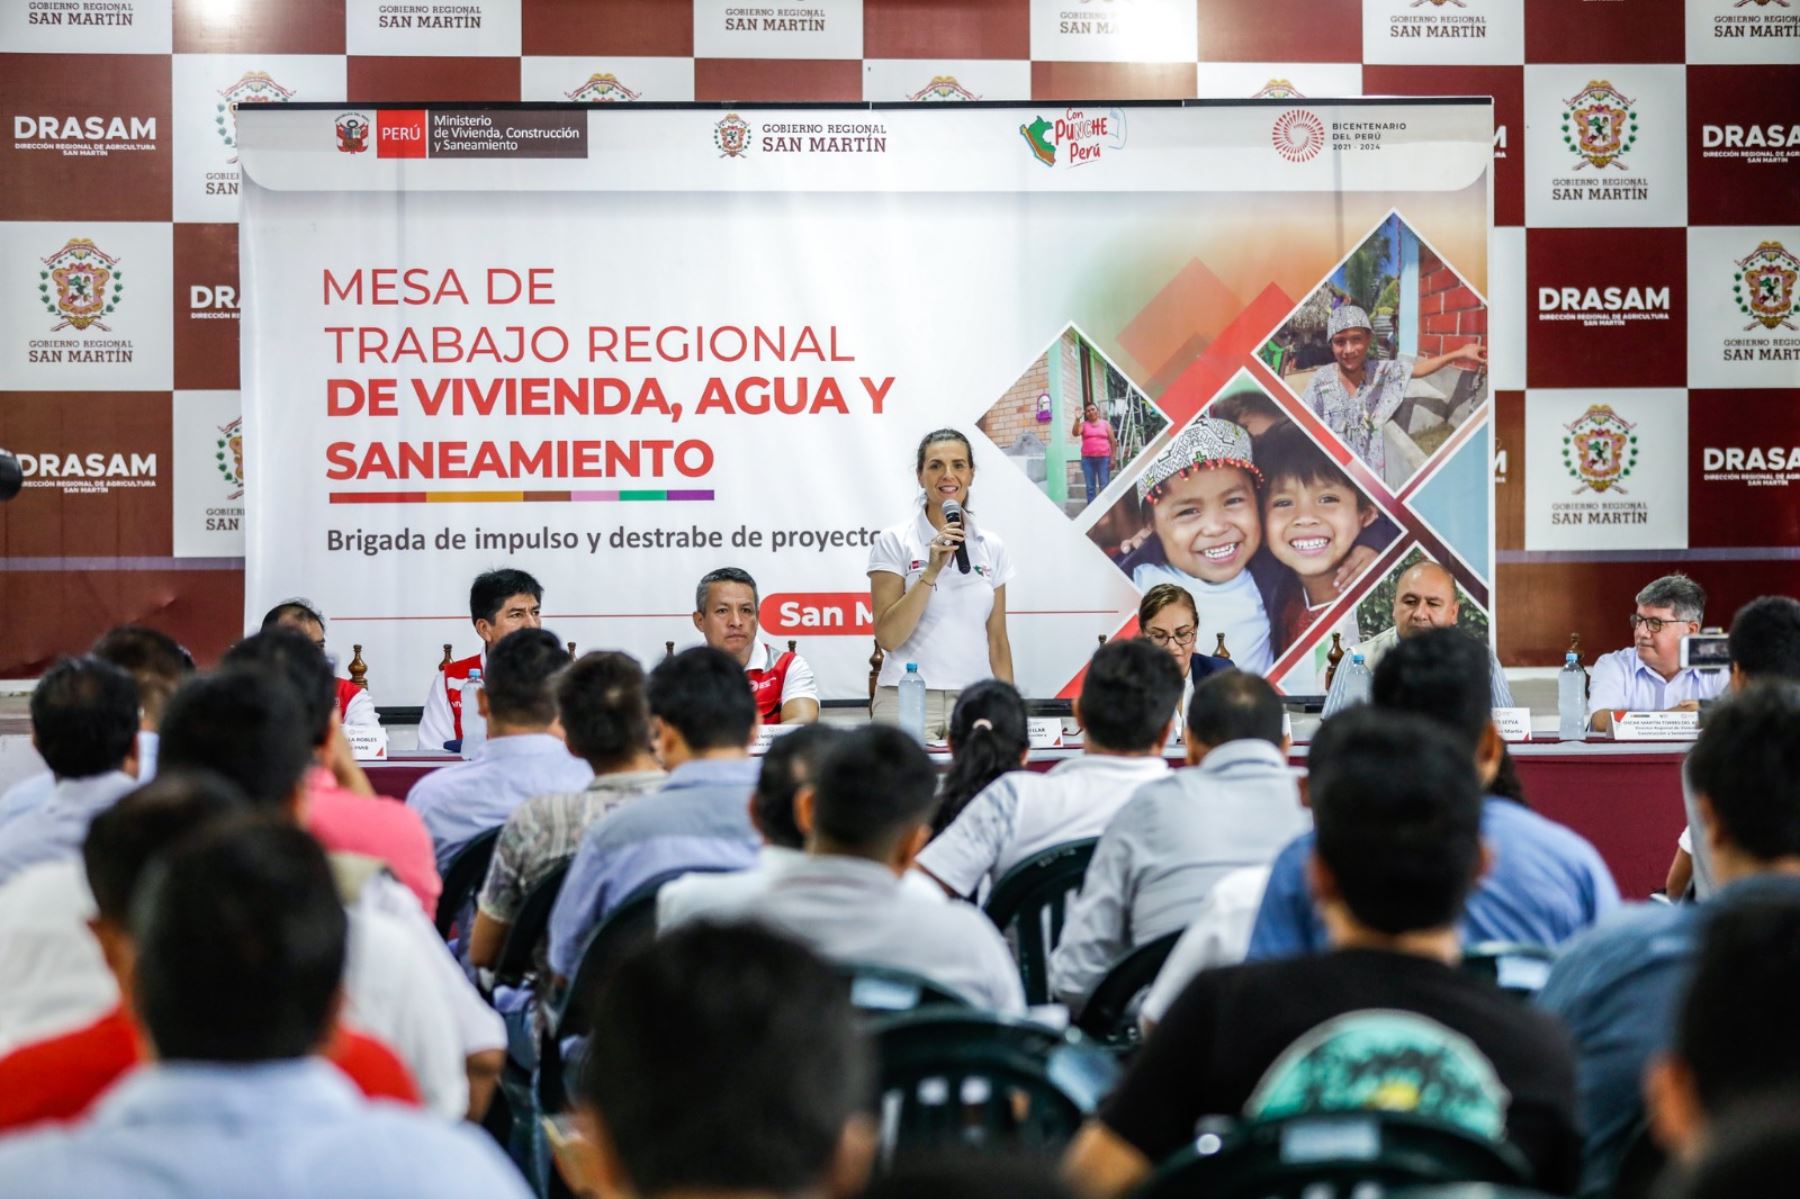 Más de S/ 31 millones transfirió el Ministerio de Vivienda al gobierno regional y gobiernos locales de San Martín para la ejecución de obras de agua potable y saneamiento en esa región. ANDINA/Difusión